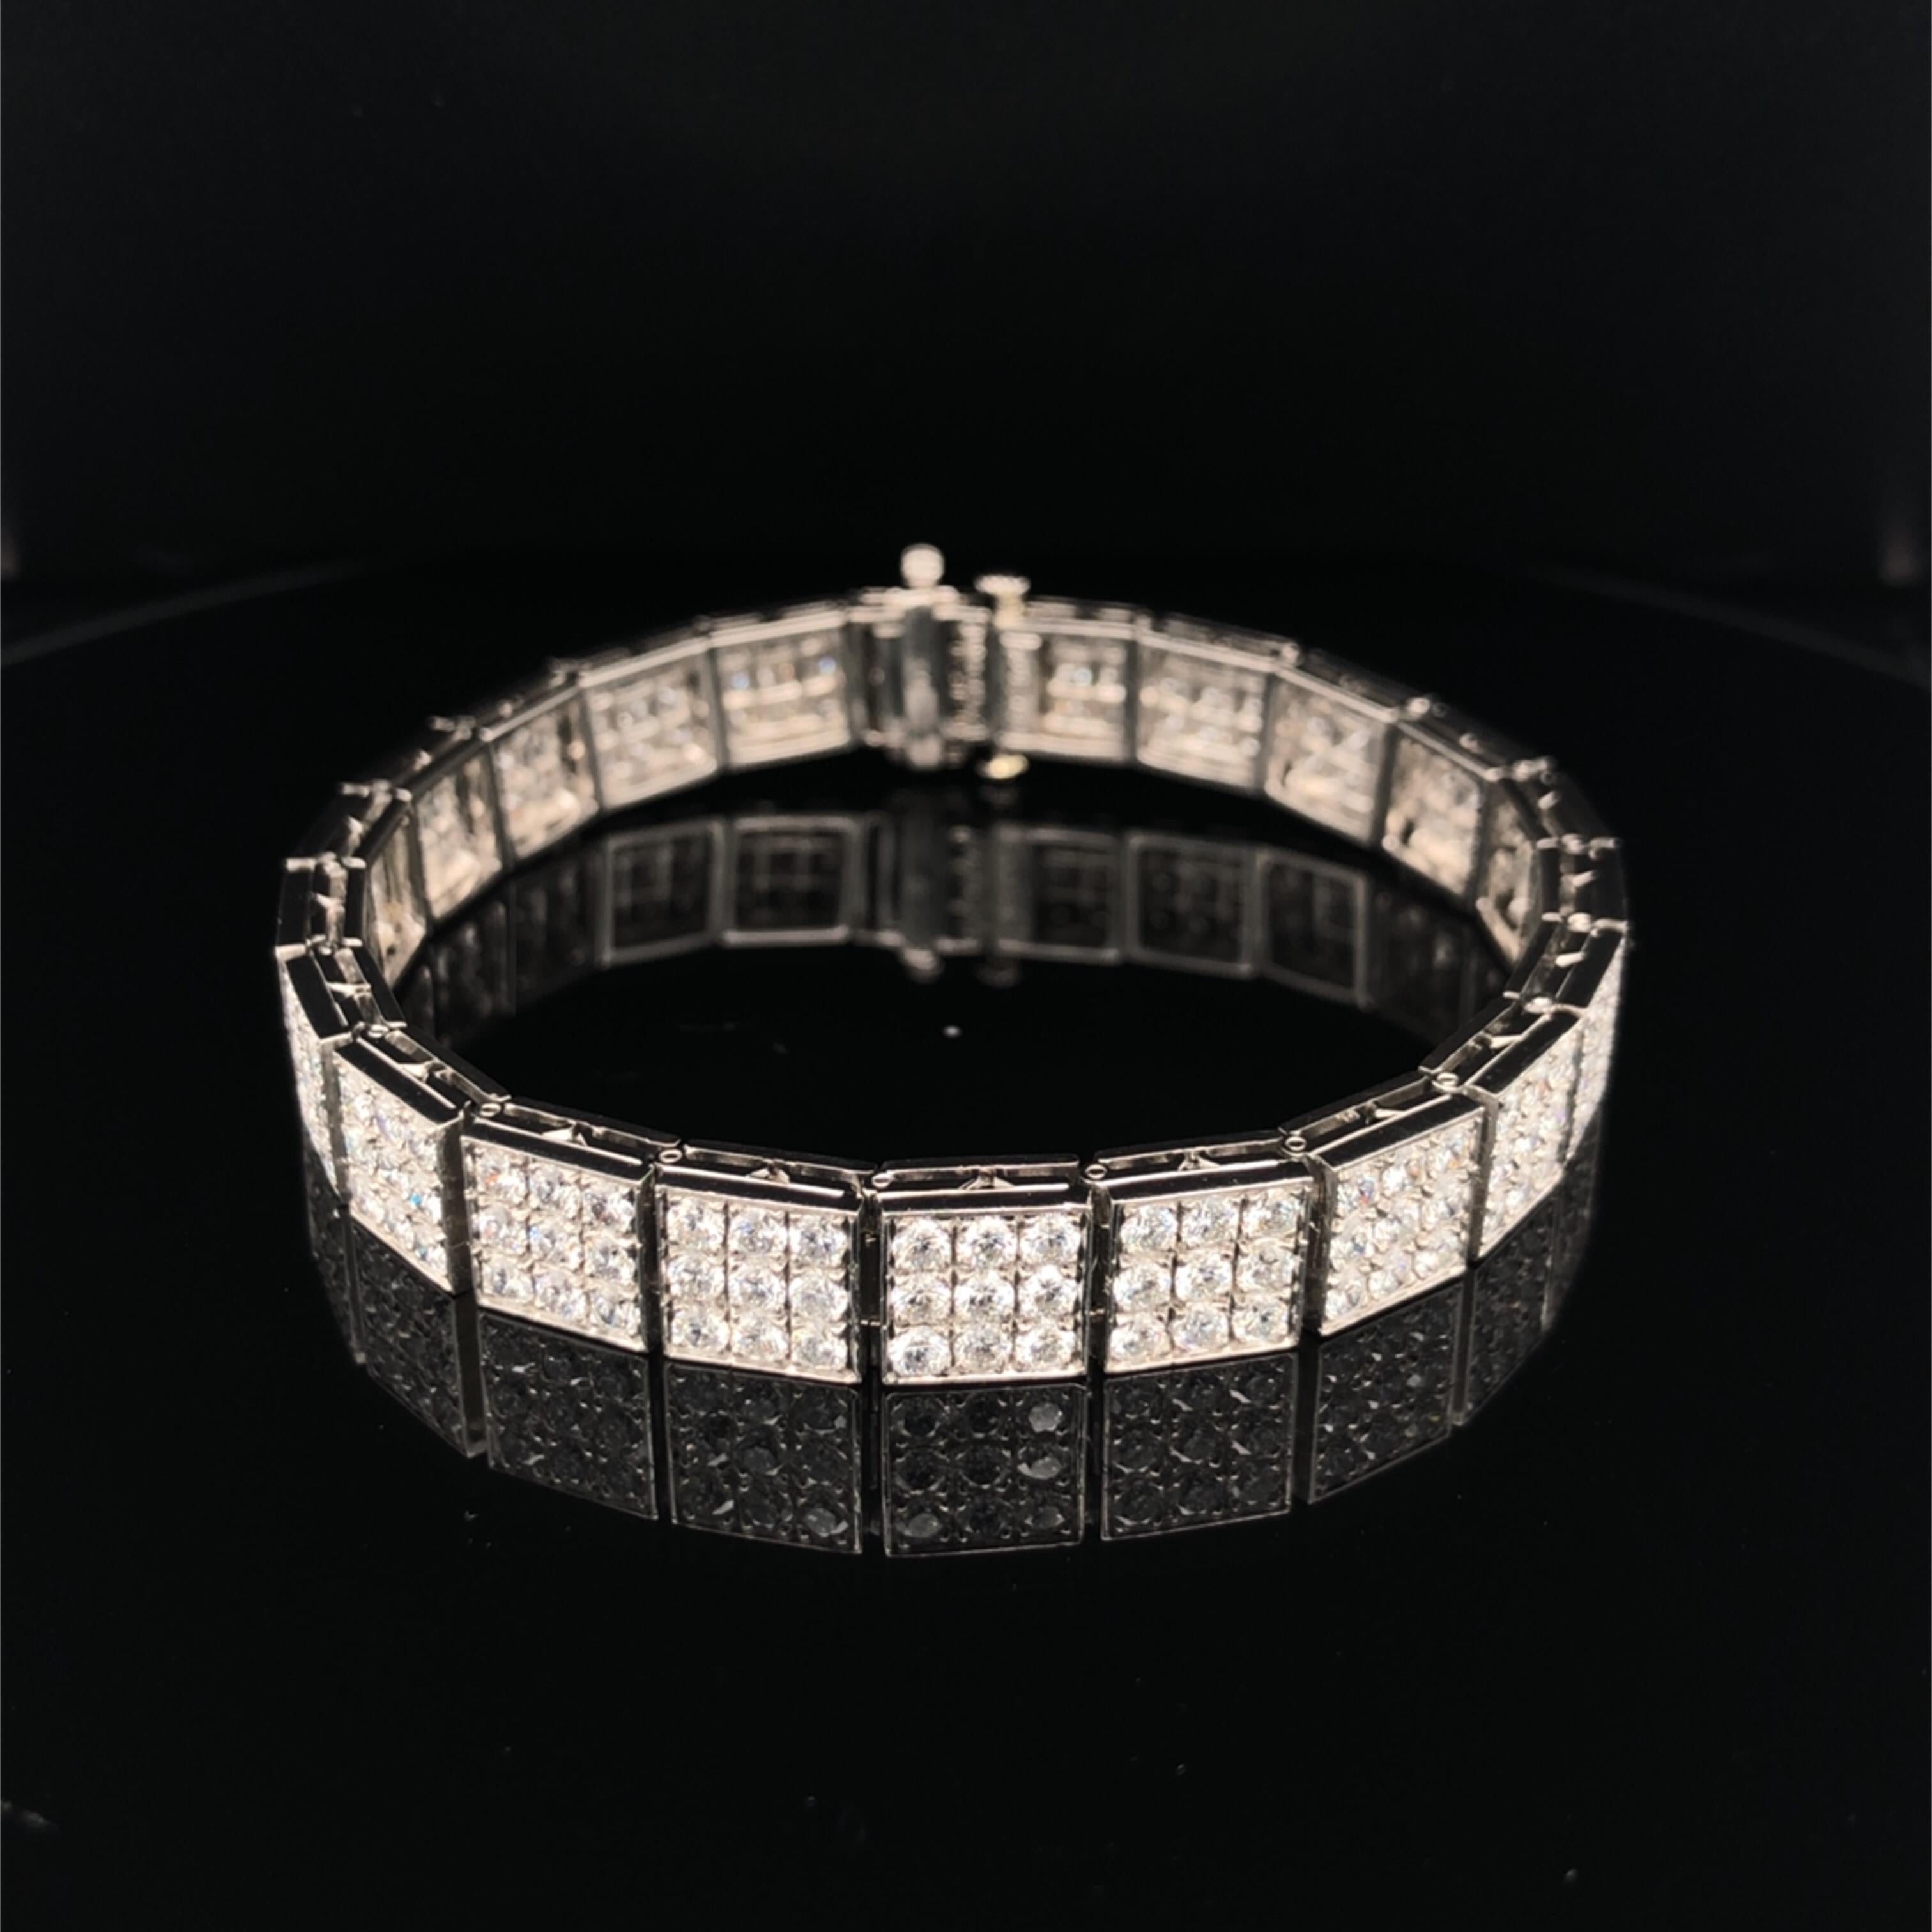 Dieses Oscar Heyman Platinarmband enthält 198 runde Diamanten mit einem Gewicht von 8,32 Karat. (F-G/VS-Qualität) in Ornamente gefasst, die ein 3x3-Quadrat darstellen. Sie ist mit der Herstellermarke IRID PLAT und der Seriennummer 803845